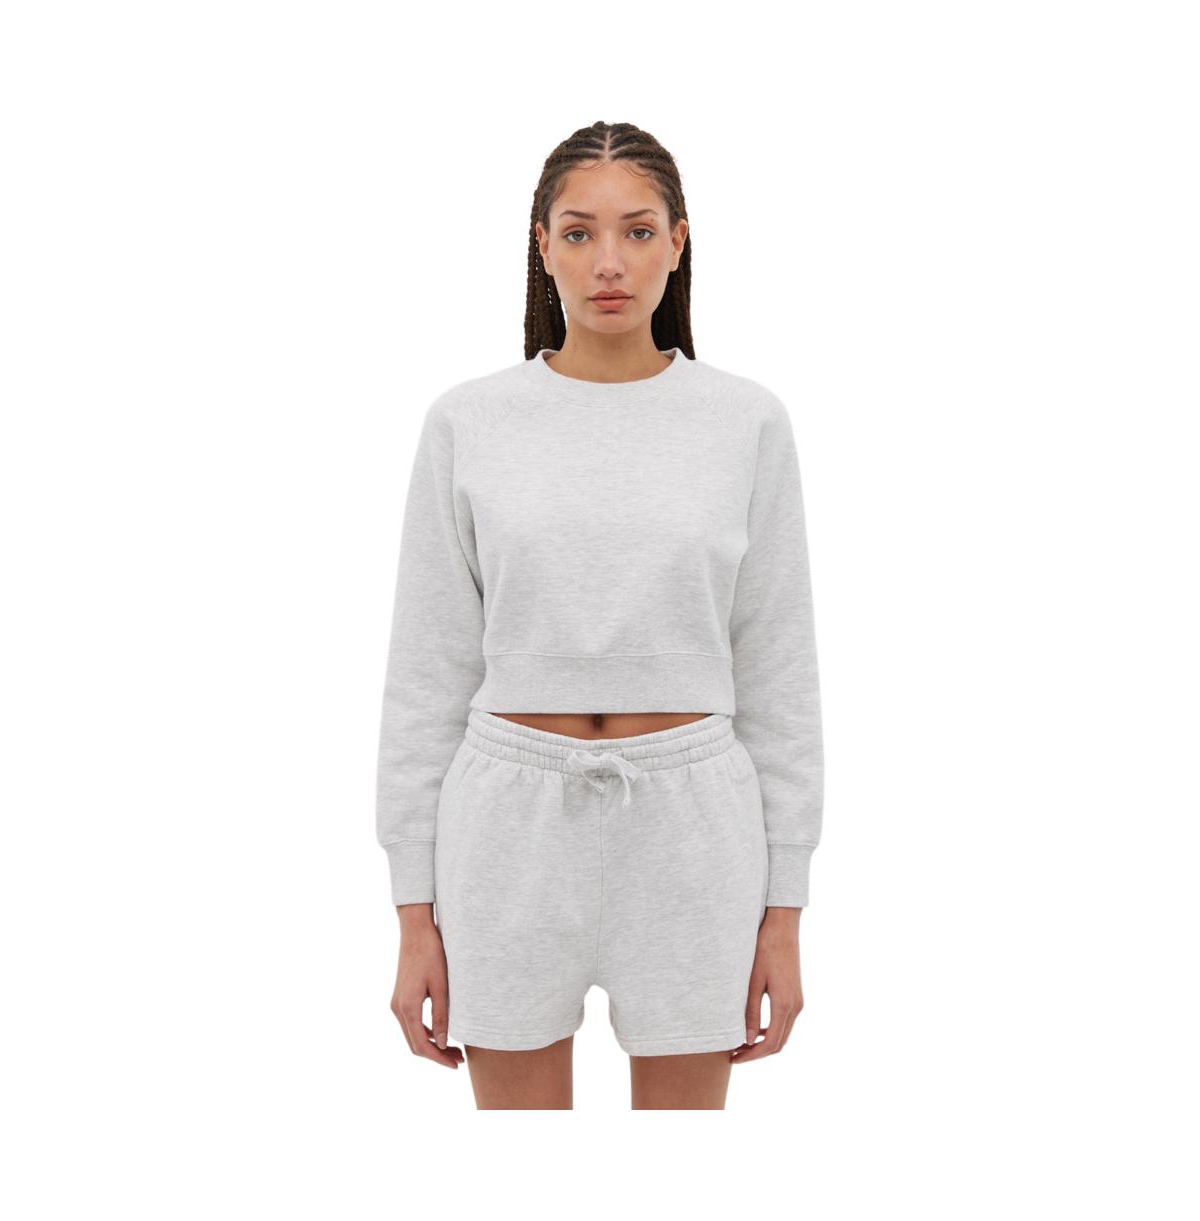 Women's Crown Eco-Fleece Cropped Crew Neck Sweatshirt - BLEH10500 - Light grey heather